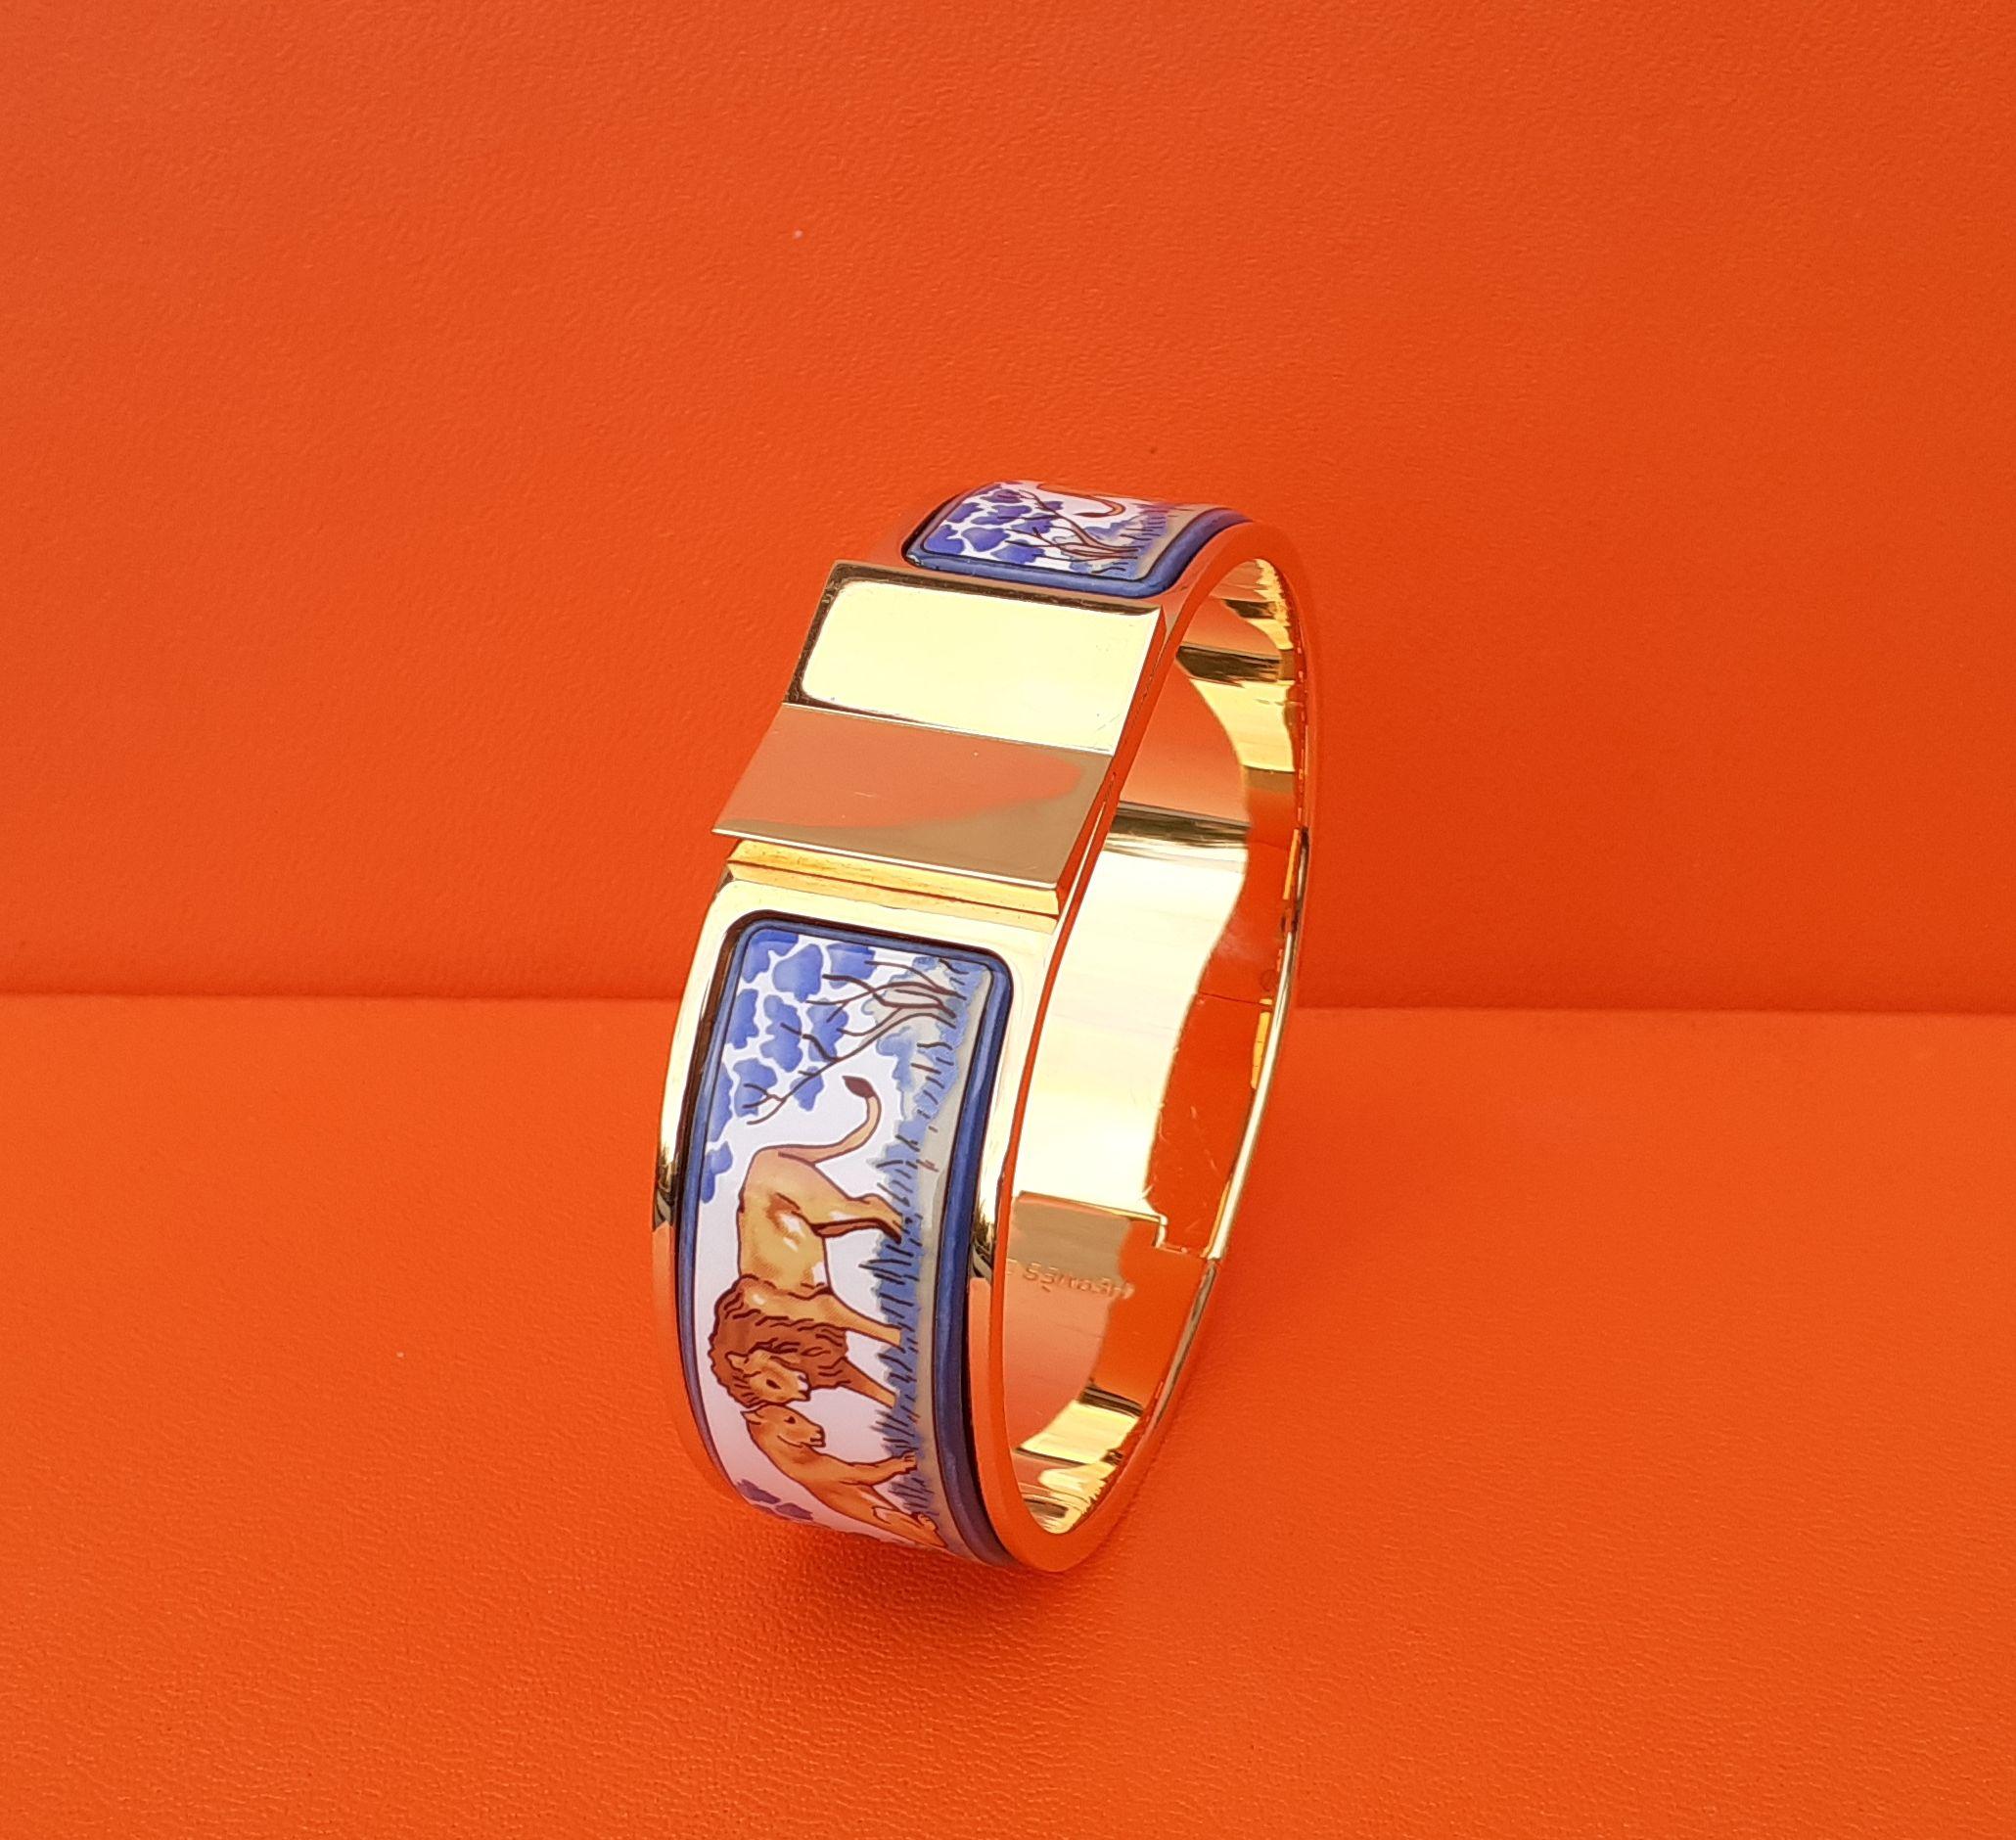 Magnifique et rare ensemble de bracelets et boucles d'oreilles Hermès authentiques

Modèle : Lions et lionnes à Savannah

Le bracelet est une version 